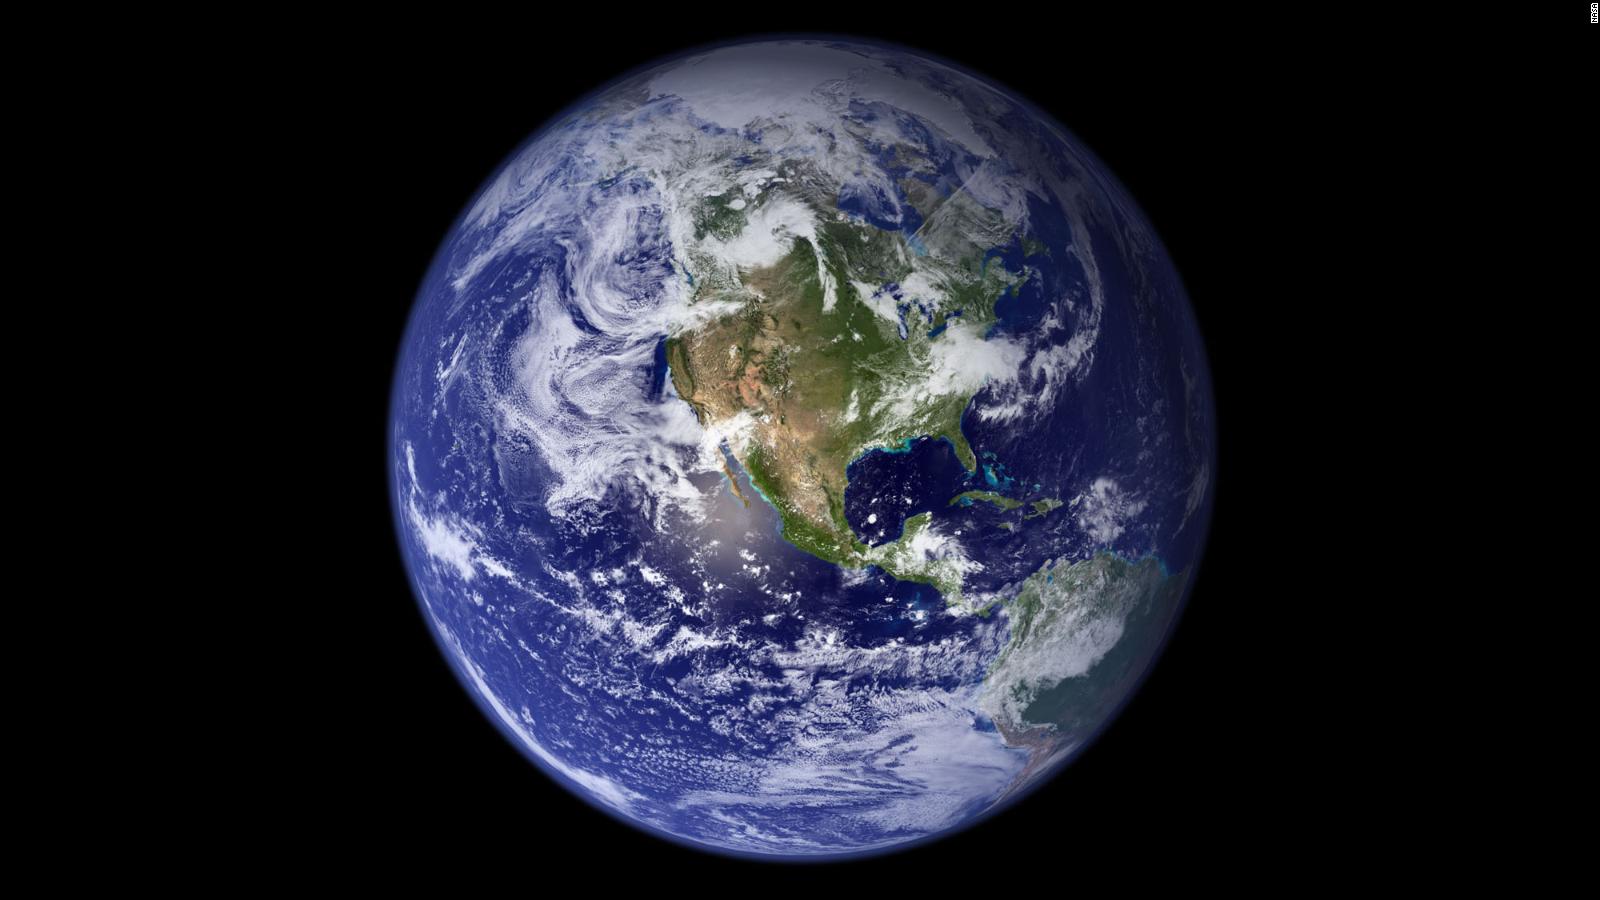 Eyes on the Earth registra al planeta en tiempo real | Video